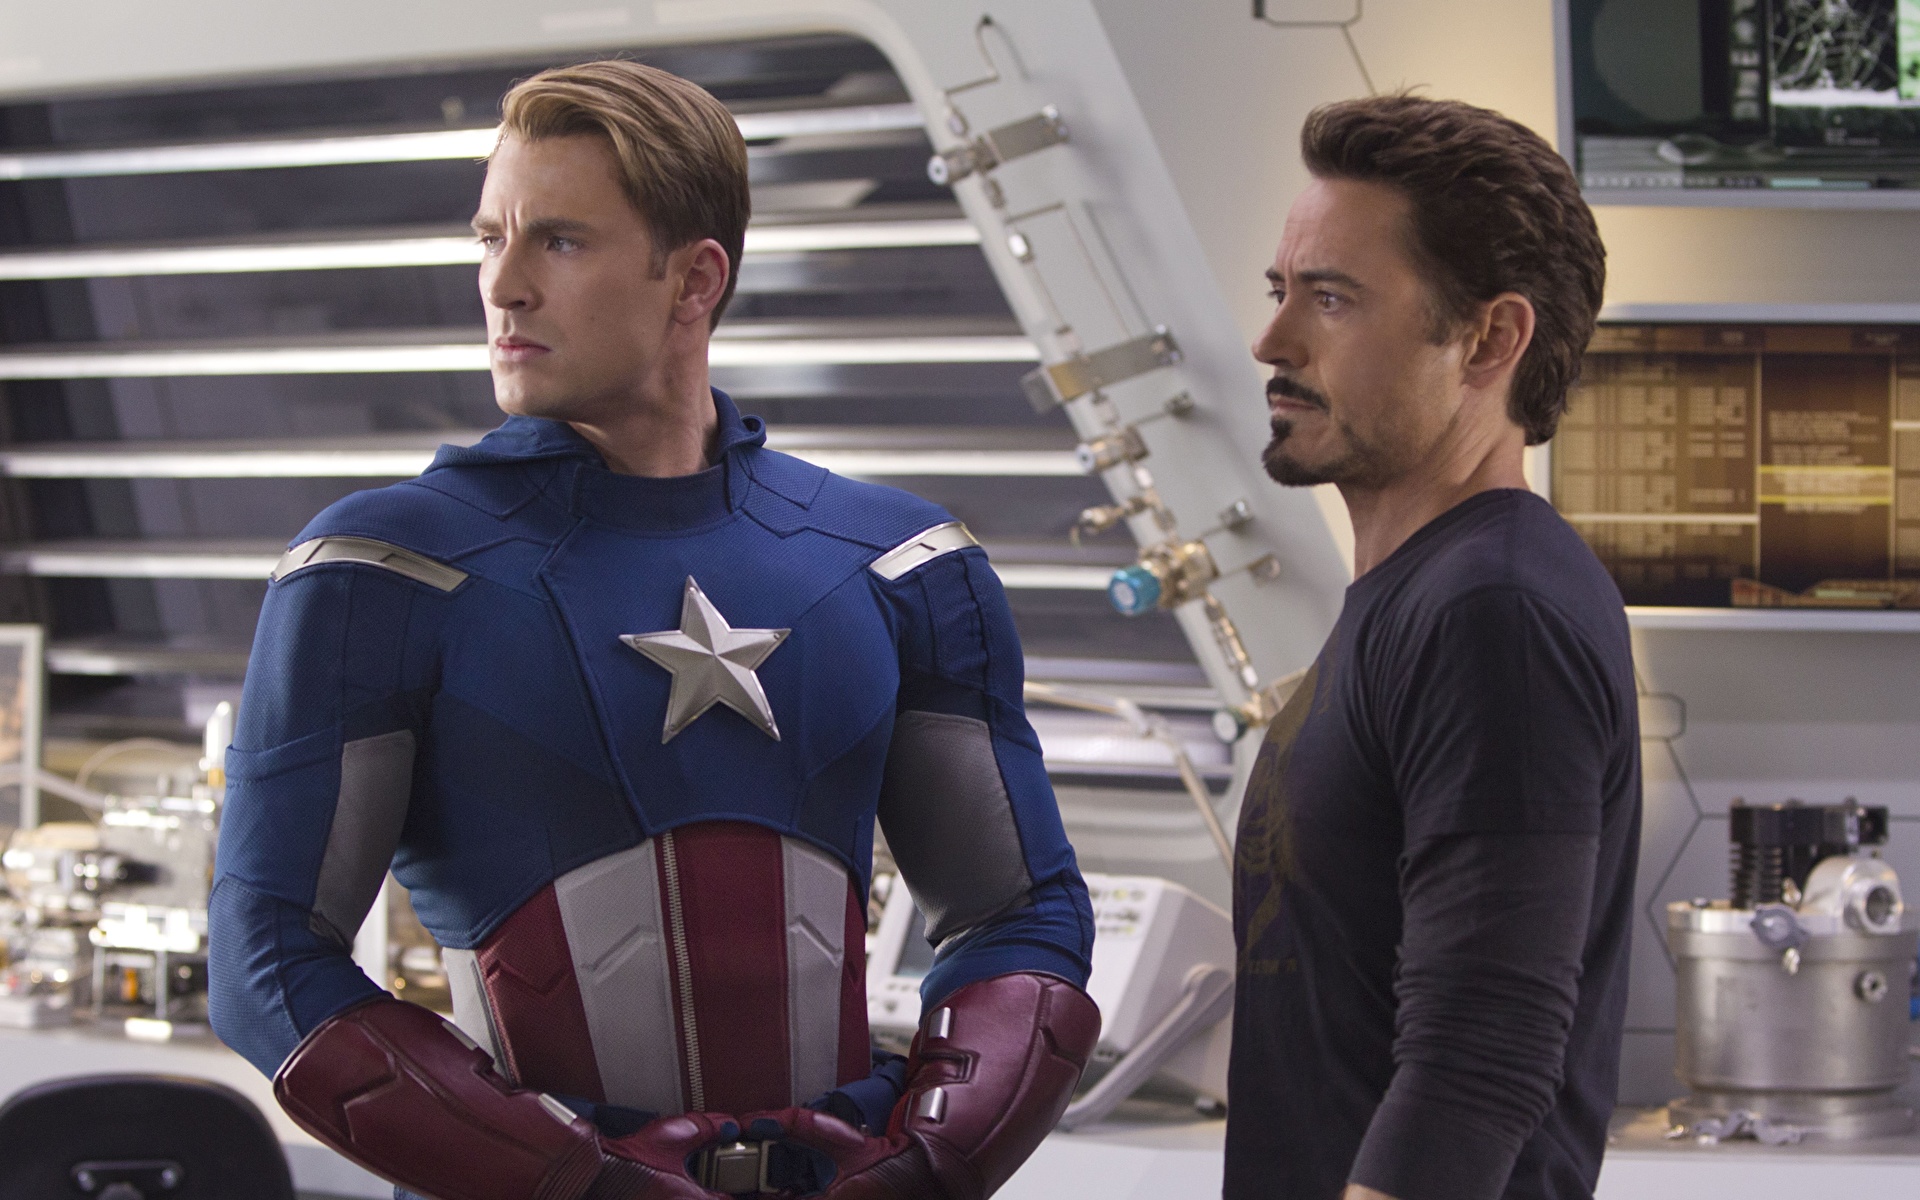 Afbeeldingen The Avengers (2012) Chris Evans Robert Downey Jr Captain America superheld film 1920x1200 Films